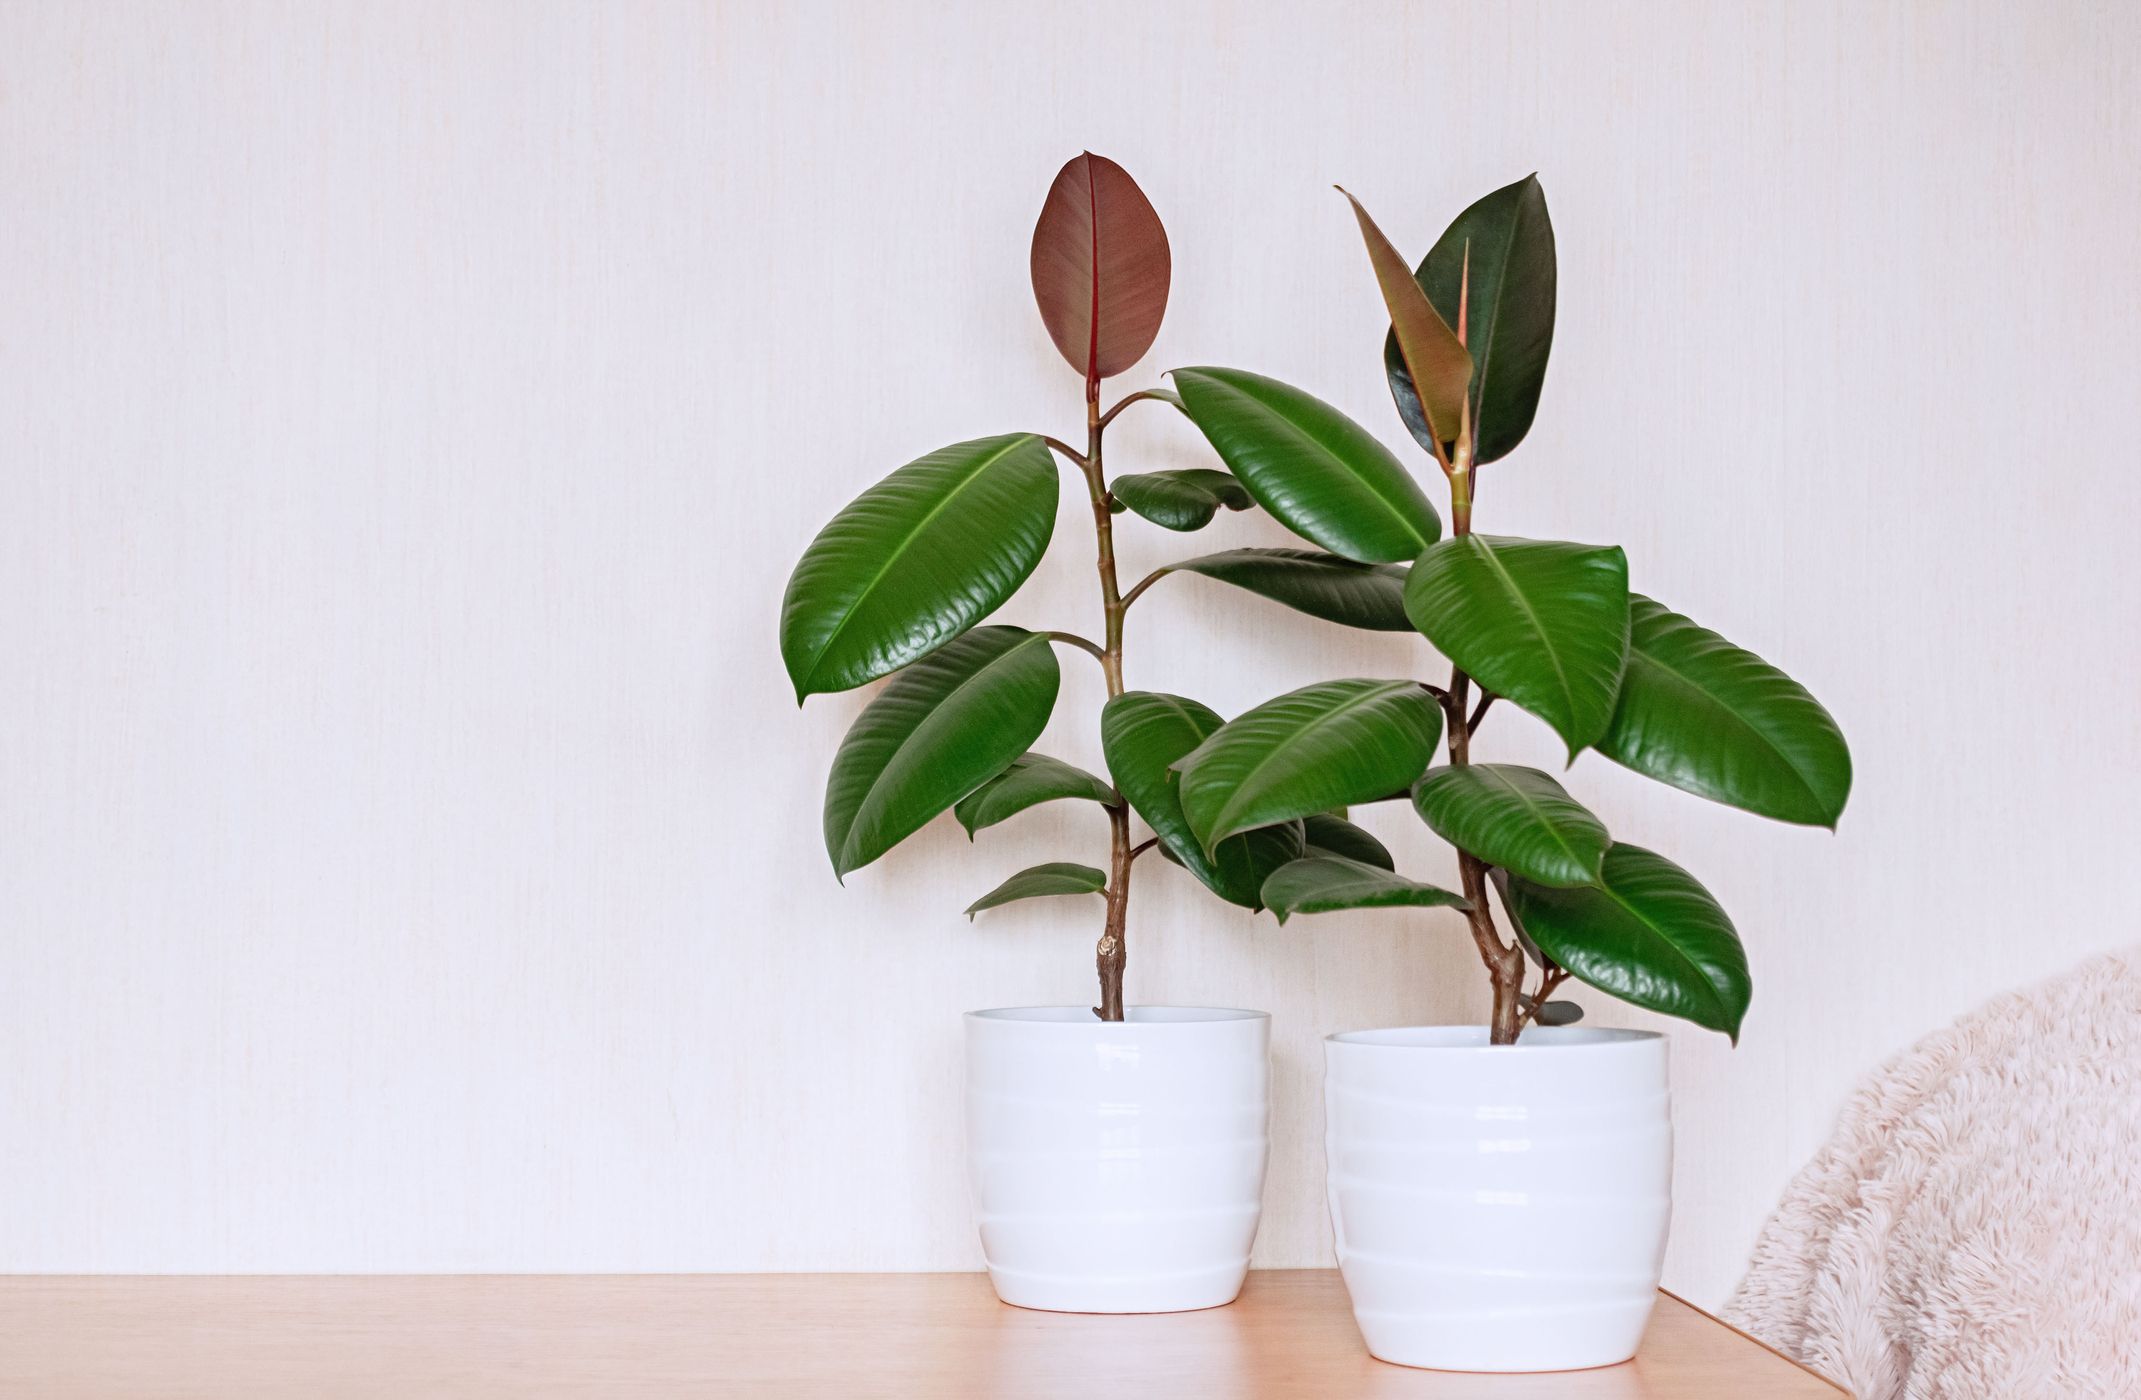 Pertumbuhan tanaman treerubber dalam ruangan